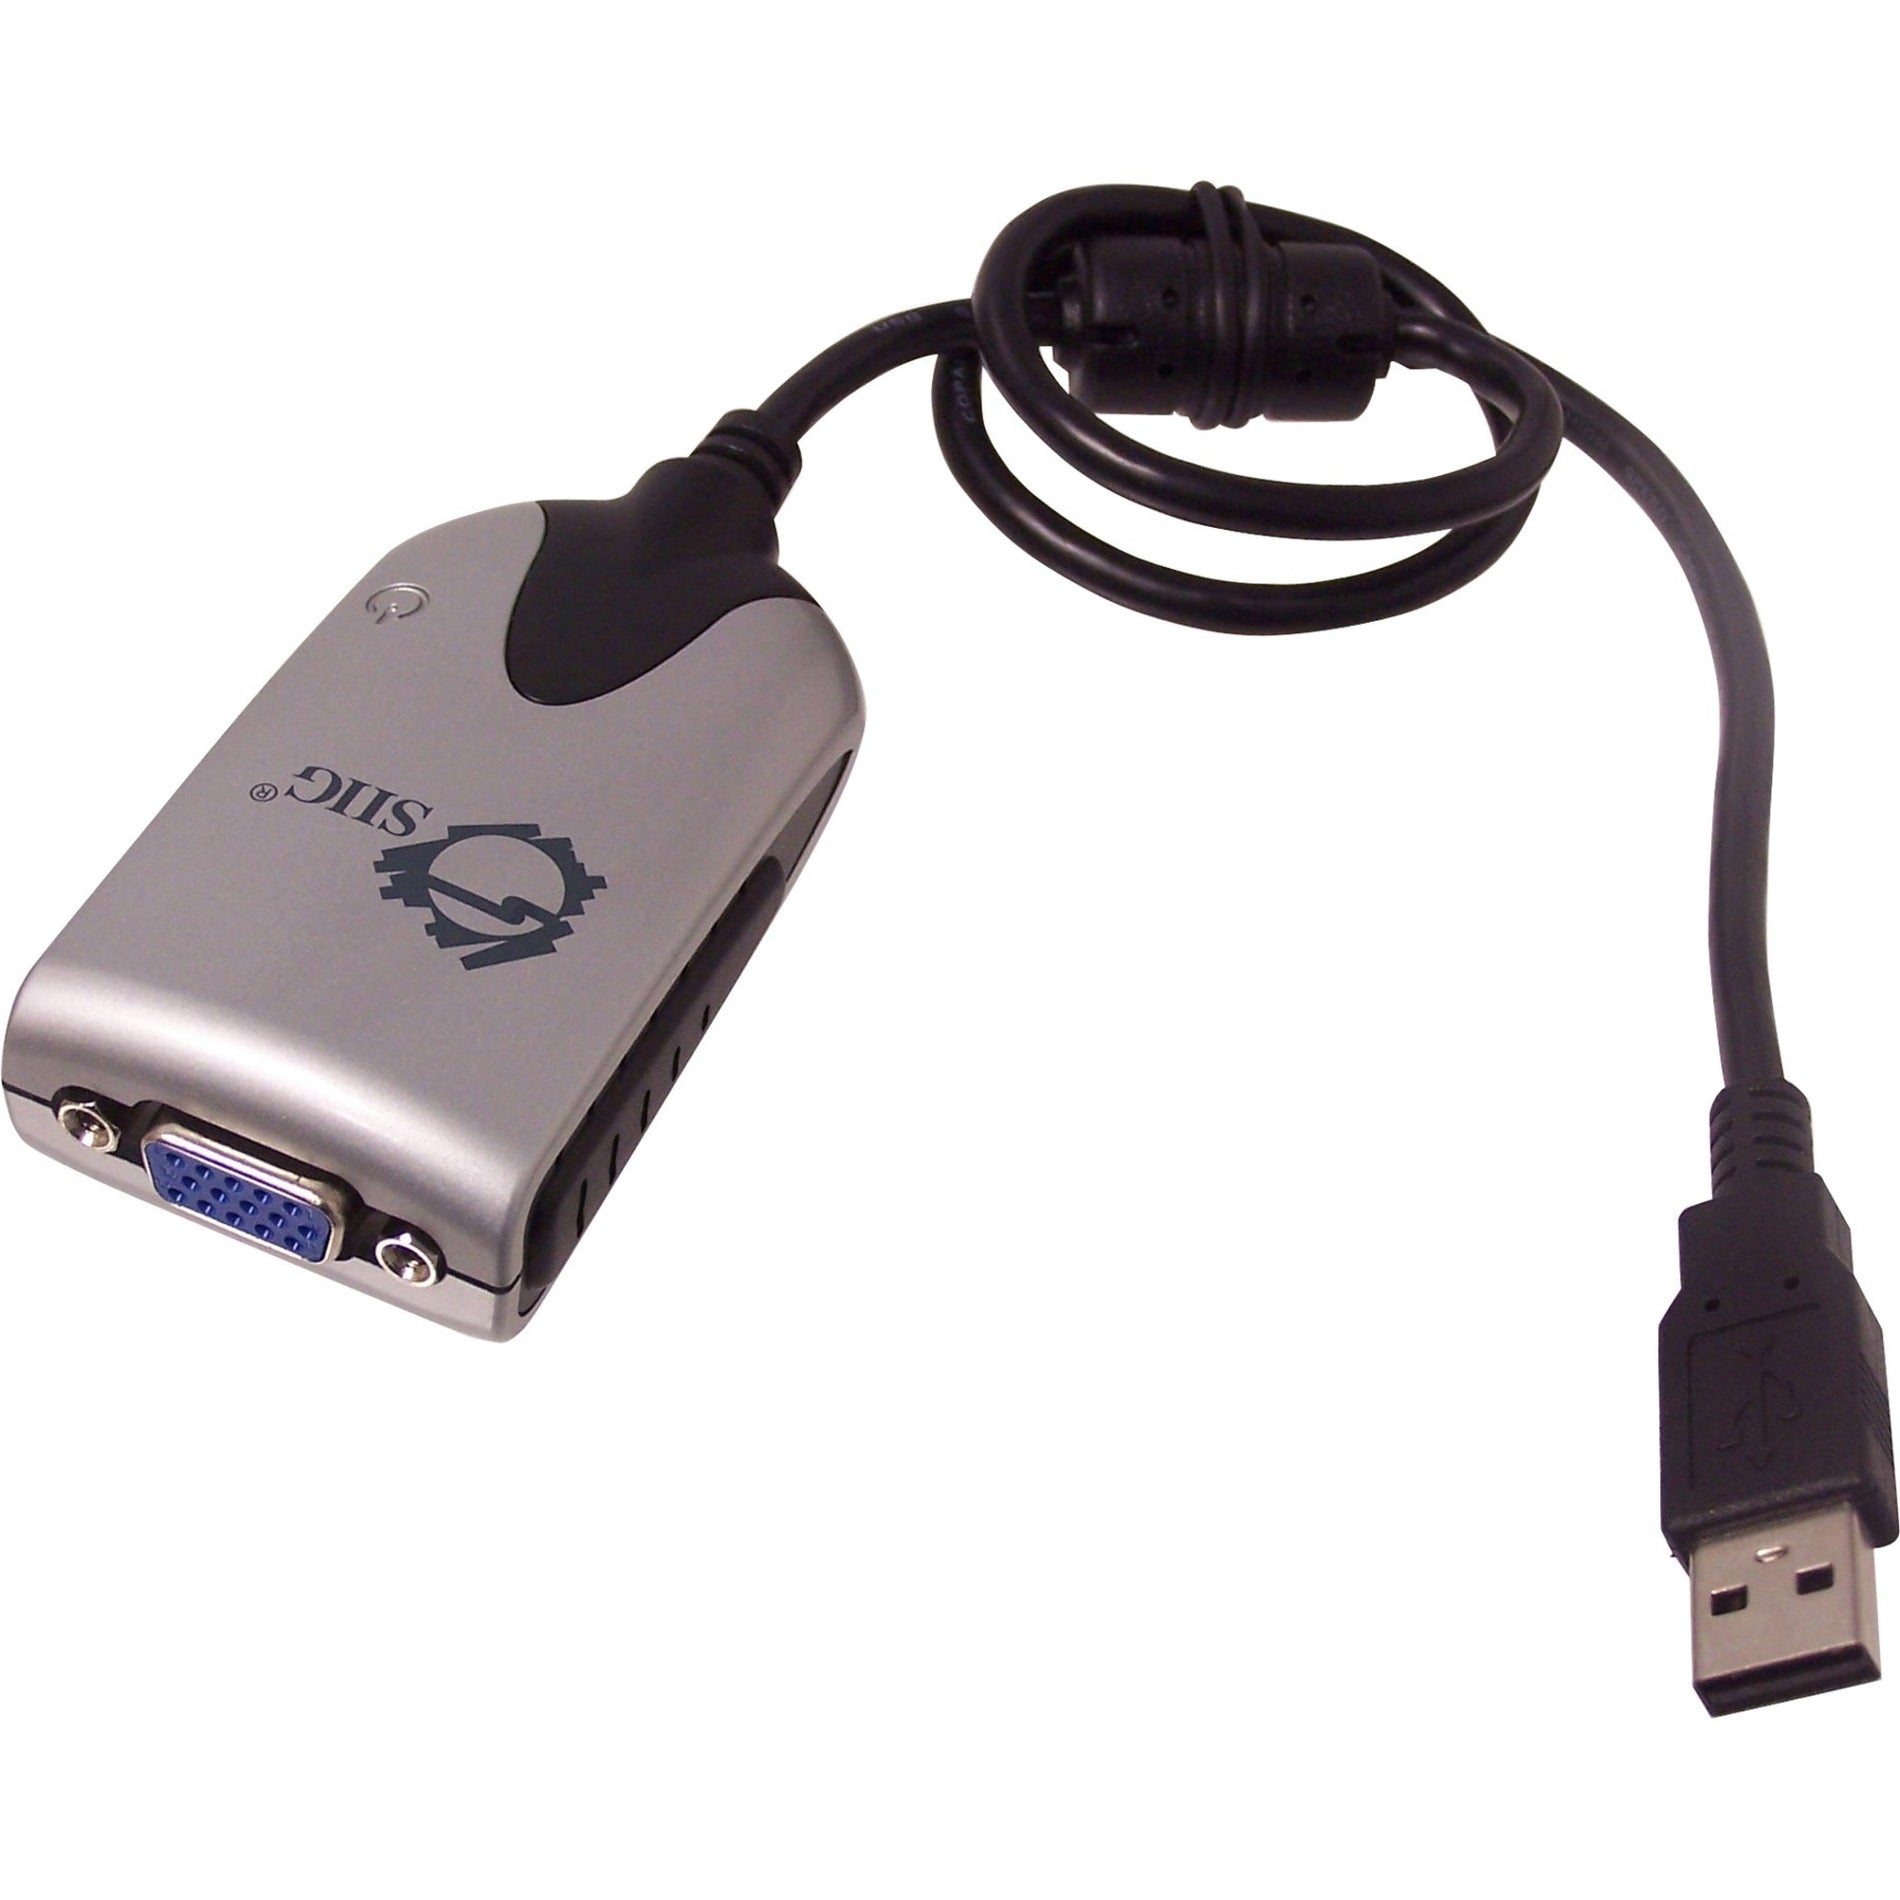 SIIG JU-000071-S2 USB to VGA Adapter, USB 2.0, Plug and Play, 5-Year Warranty